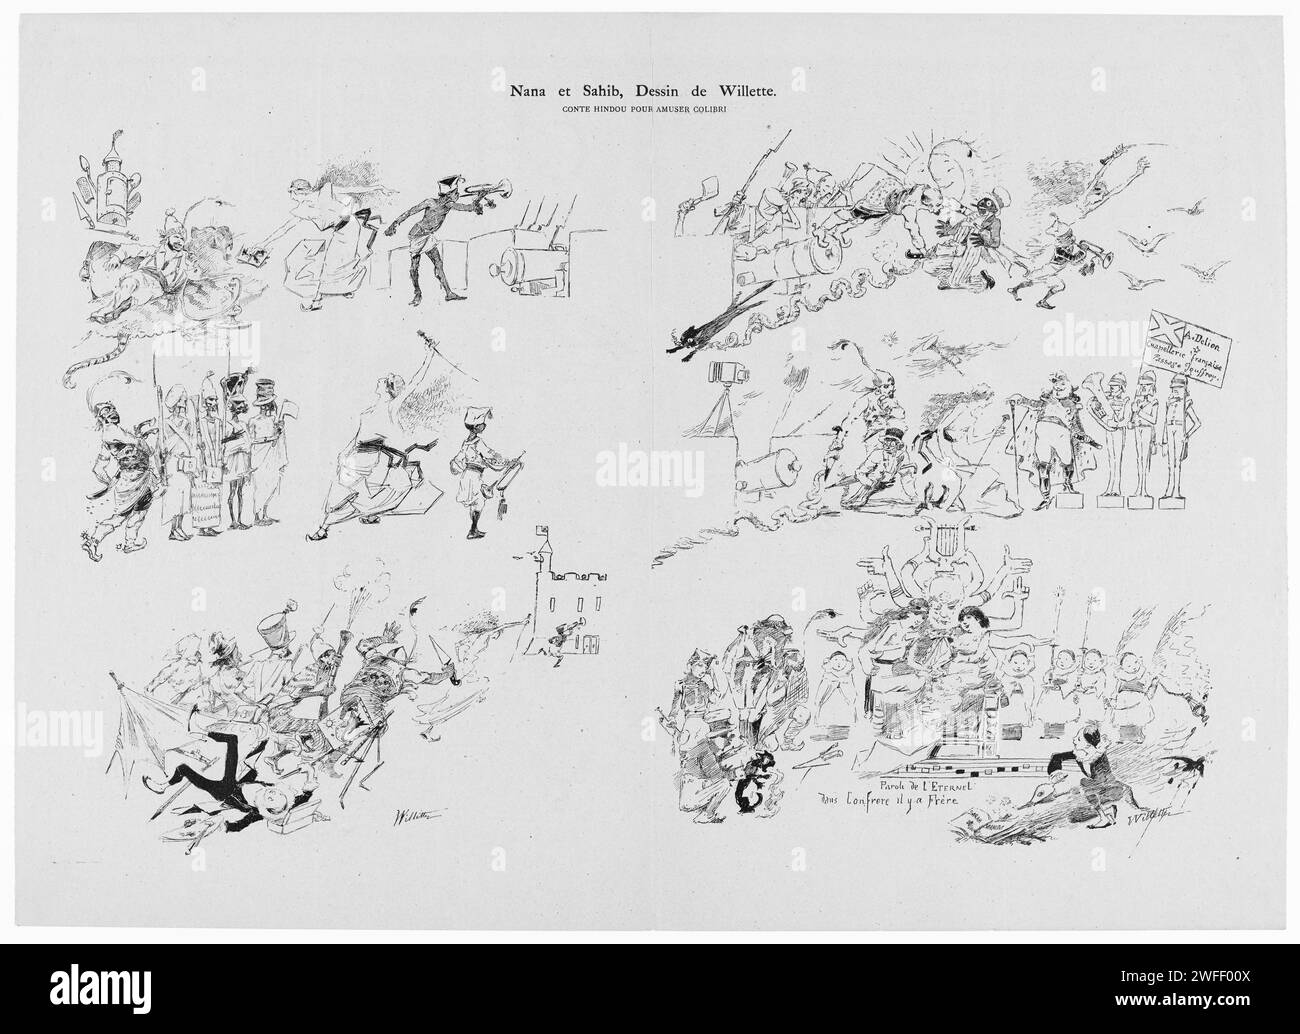 Illustration pour le périodique le Chat noir du 5 janvier 1884. Victor Hugo est représenté comme la déesse hindoue Kali en bas à droite de l'image. D'autres images concernent la rébellion en Inde menée par Nana sahib. Banque D'Images